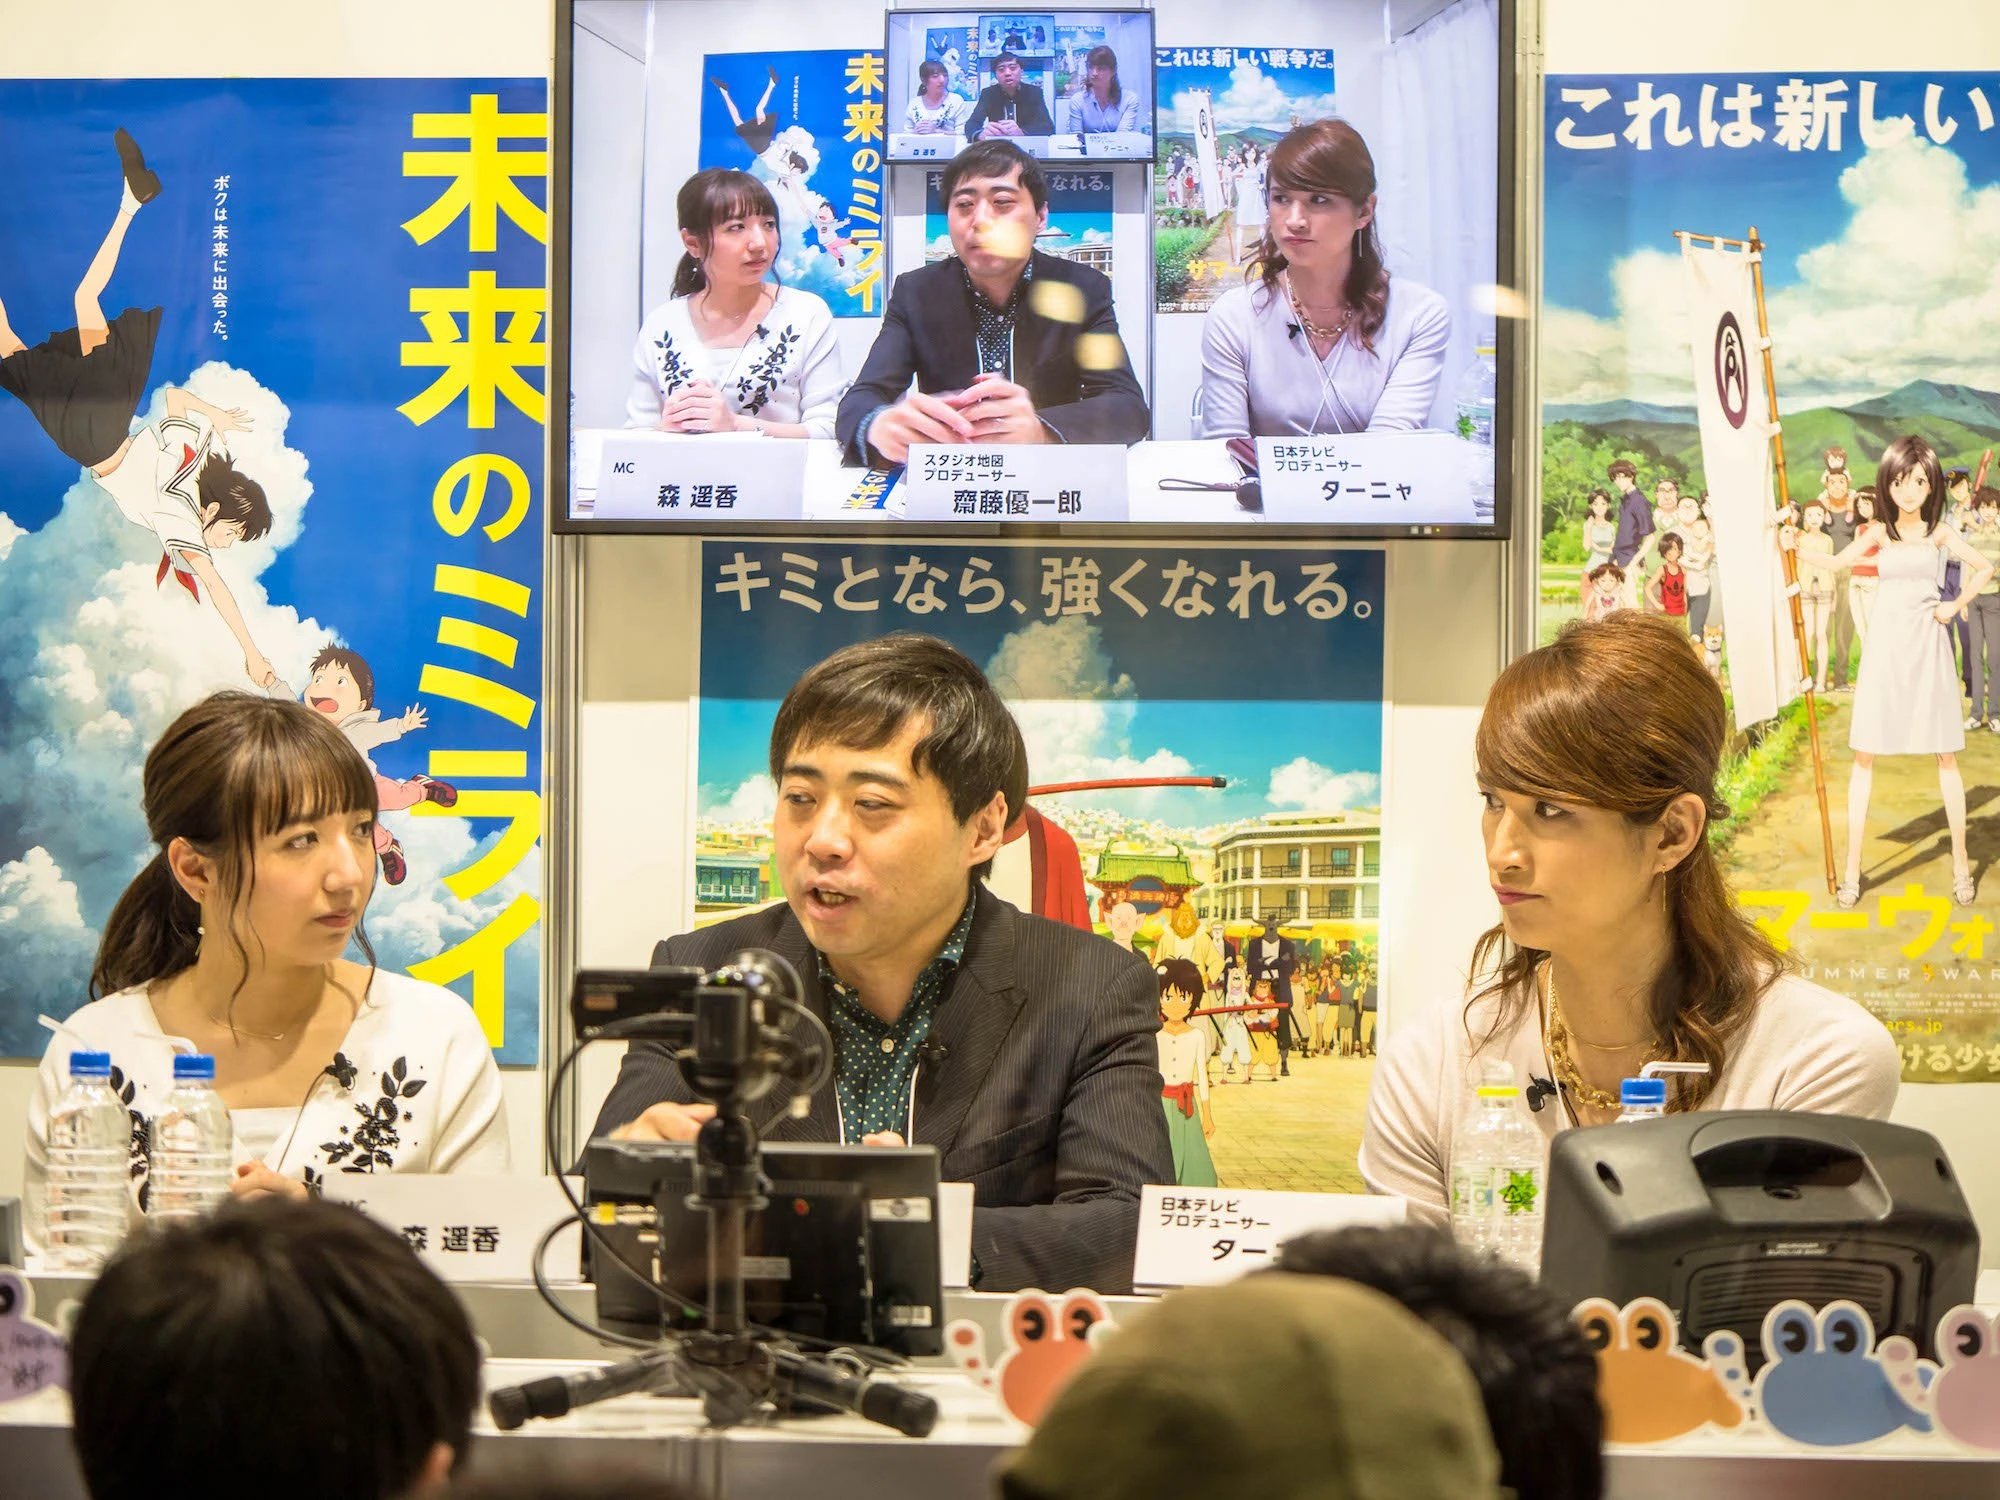 左からMCの森遥香さん、齋藤優一郎さん、ターニャさん